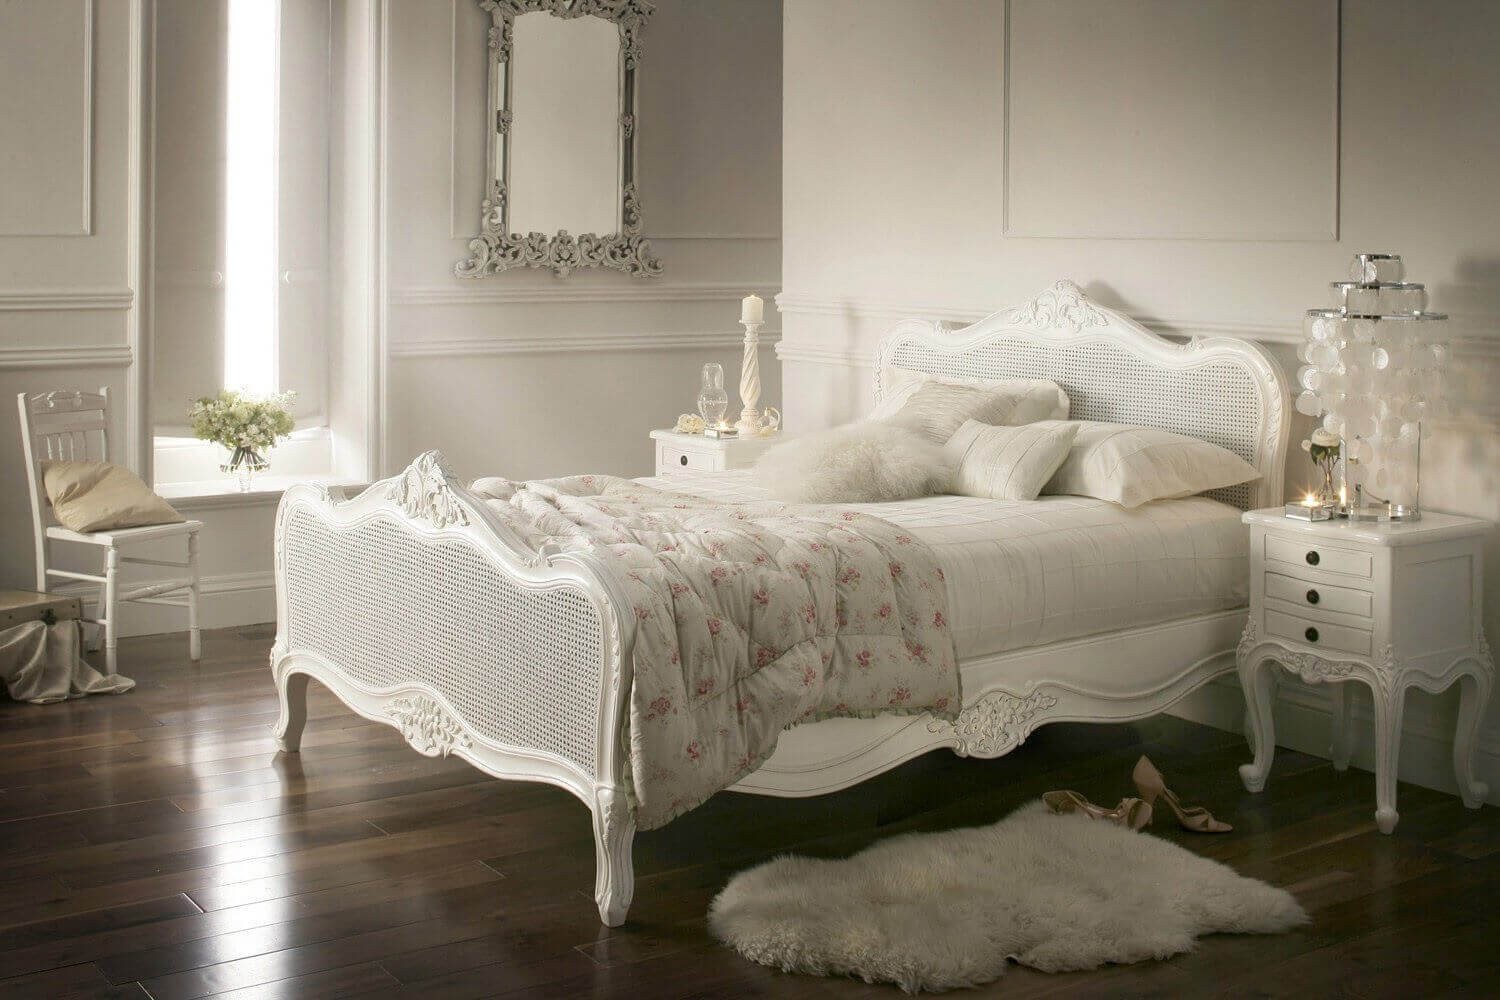 Vintage Wall Decor for Bedroom Elegant 33 Best Vintage Bedroom Decor Ideas and Designs for 2017